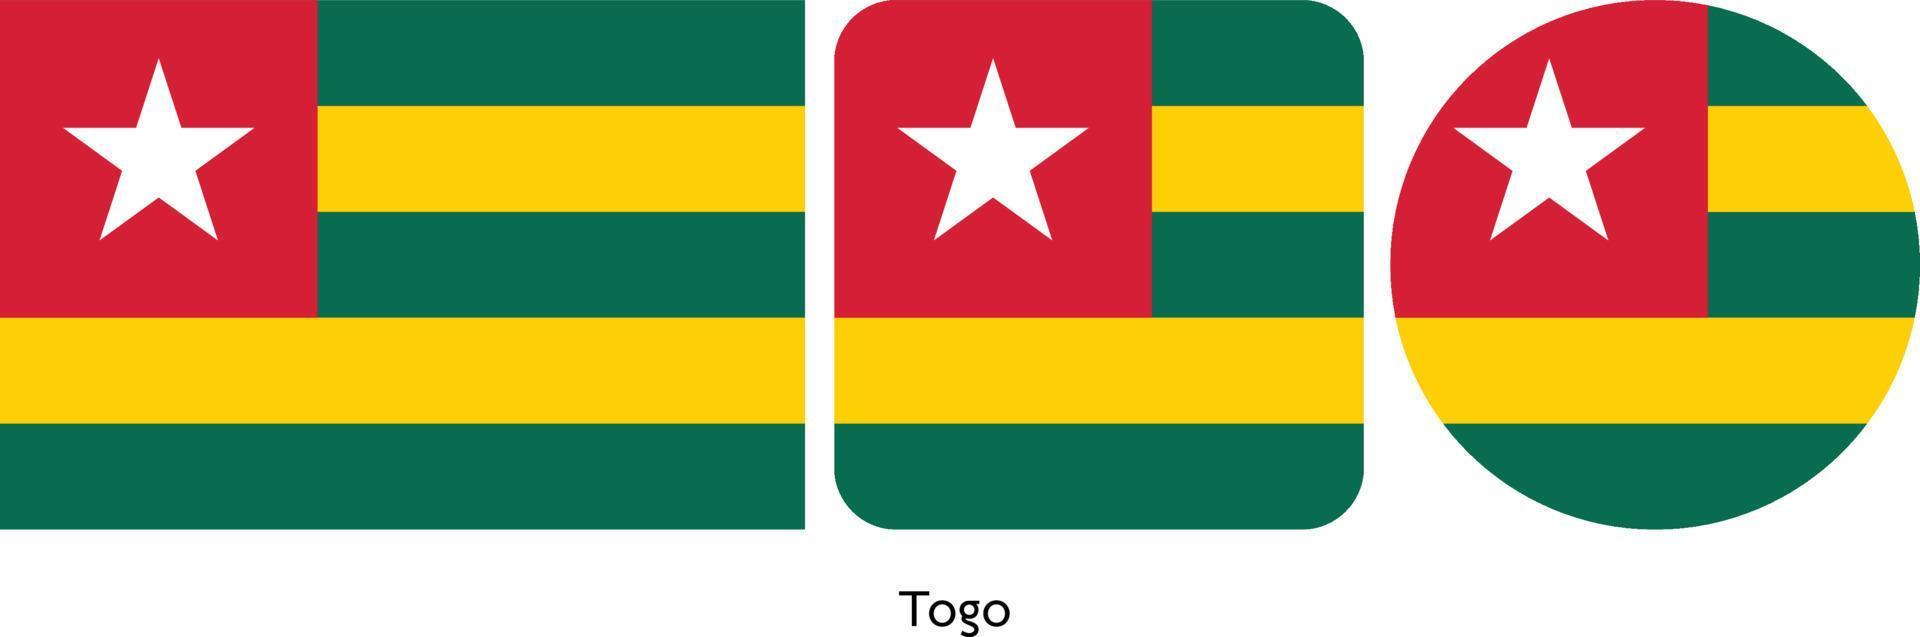 bandera togo, ilustración vectorial vector